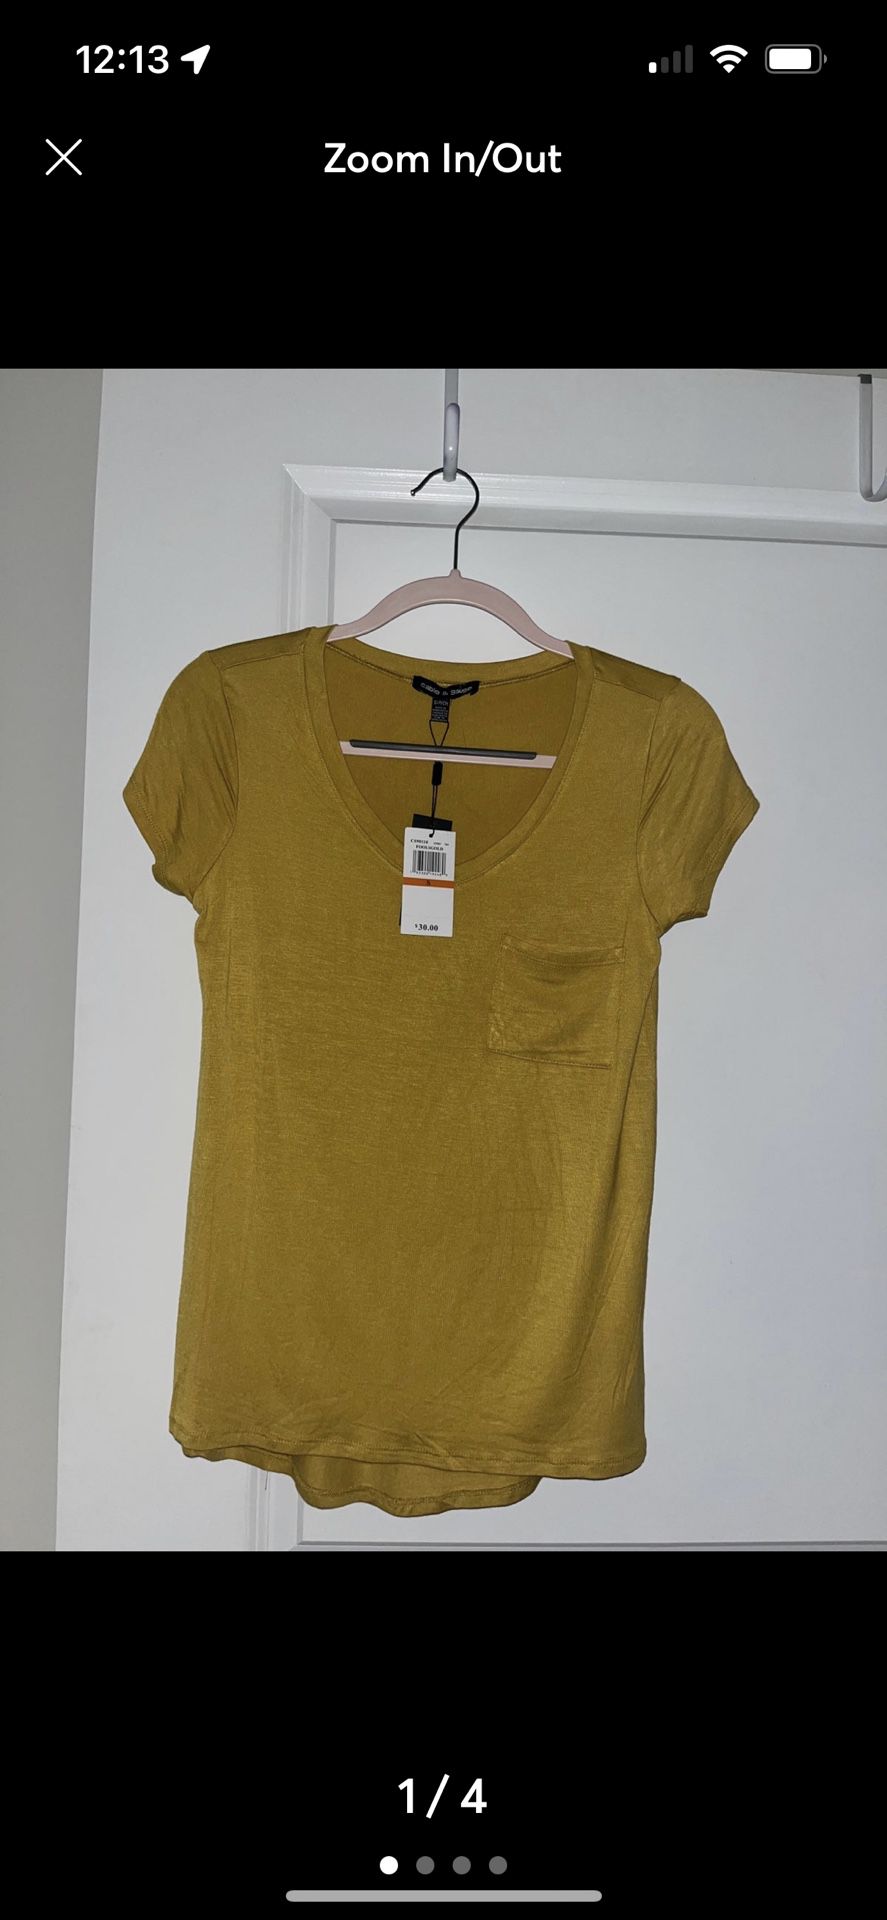 LuLaRoe Yellow Cotton T-shirt